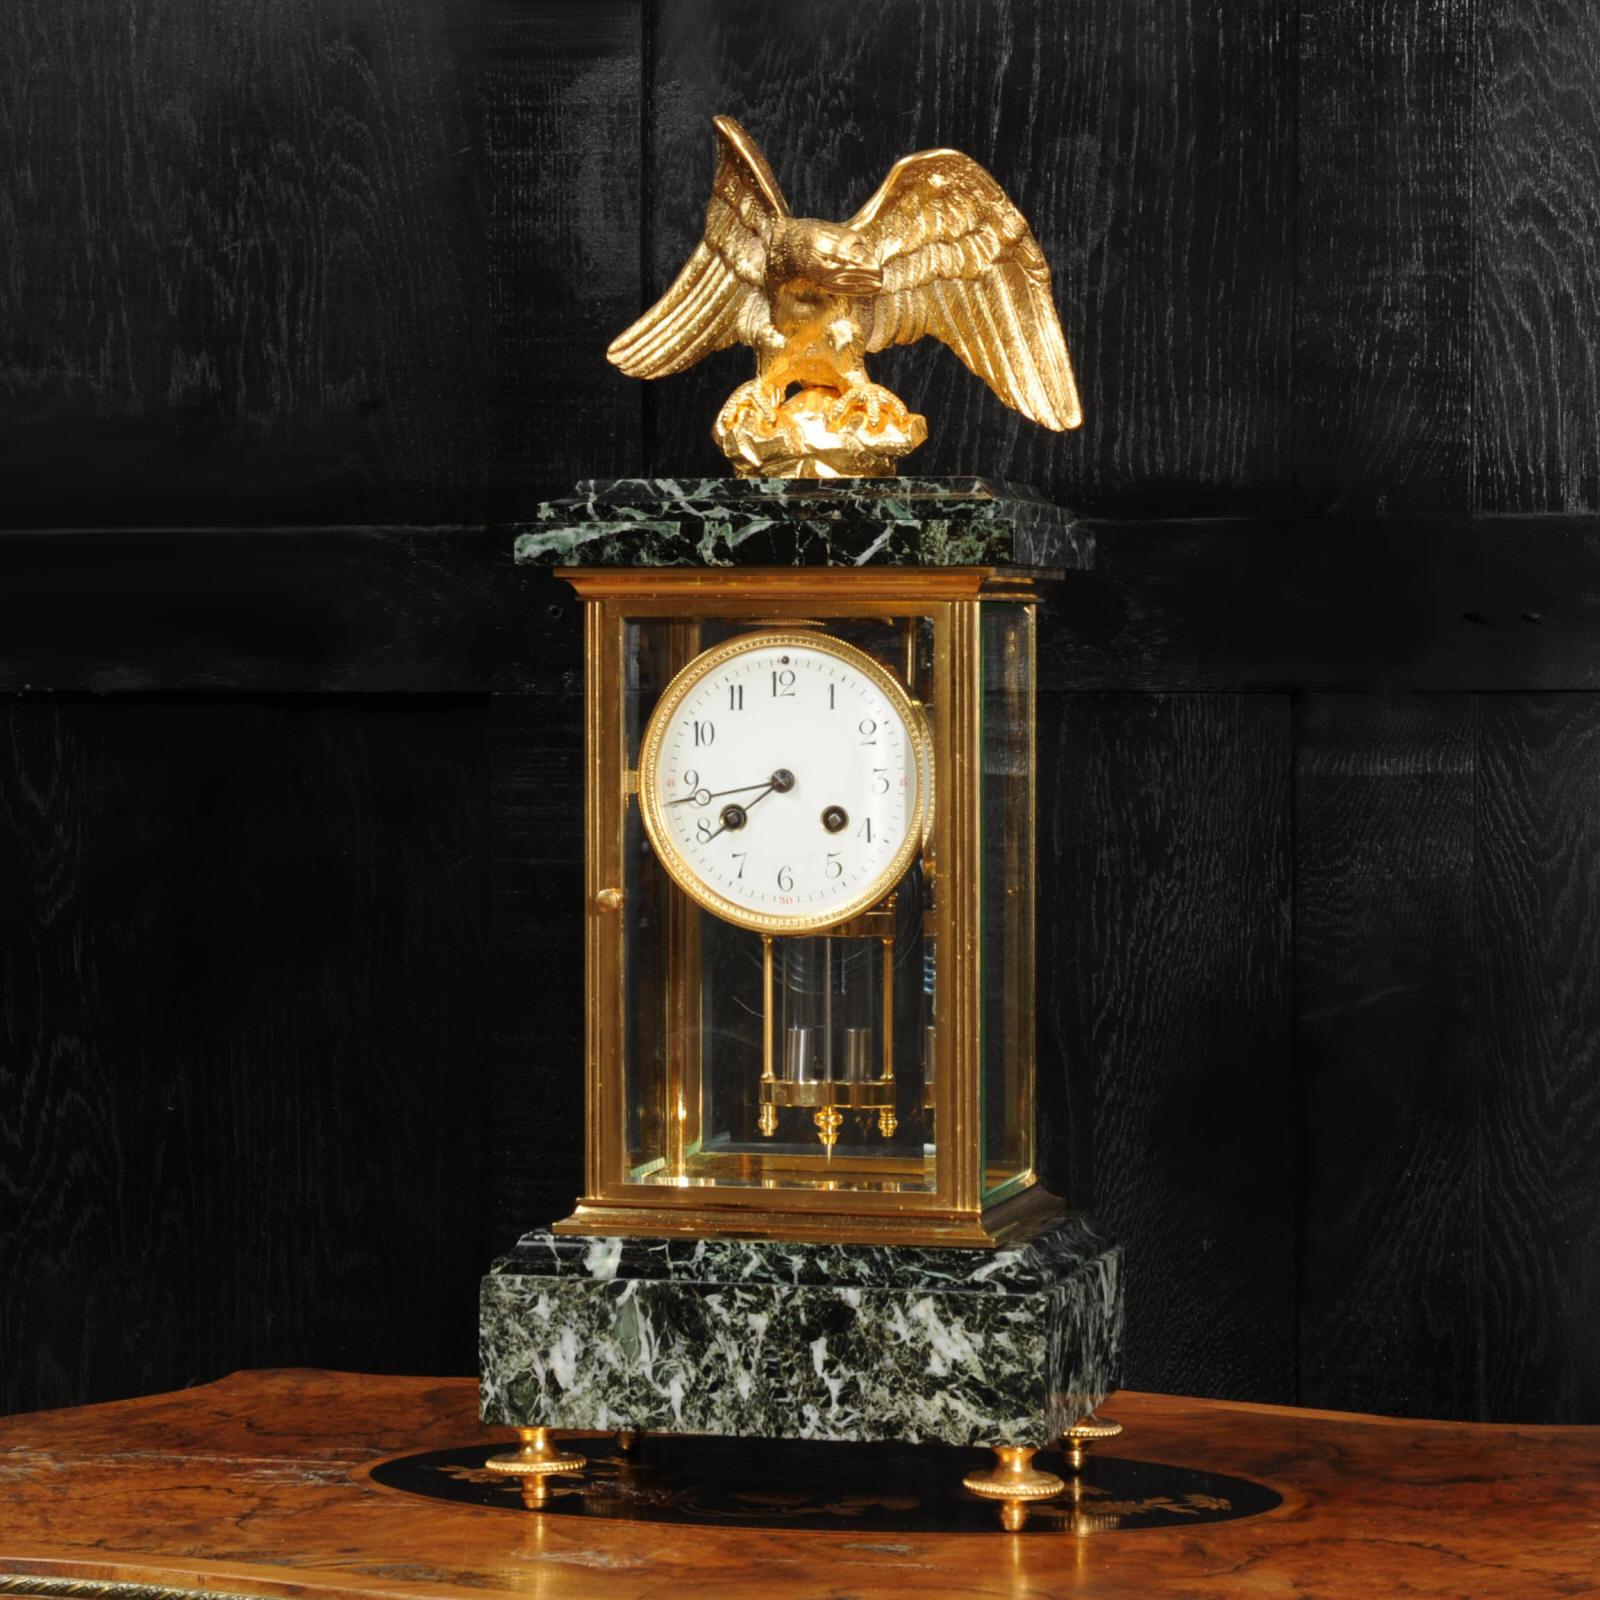 Eine atemberaubende original antike französische Uhr des berühmten Herstellers Charles Hour, um 1890. Es handelt sich um ein wunderschönes, zurückhaltendes Empire-Design in einem prächtigen, grün gefärbten Marmor und Ormolu (fein vergoldete Bronze).